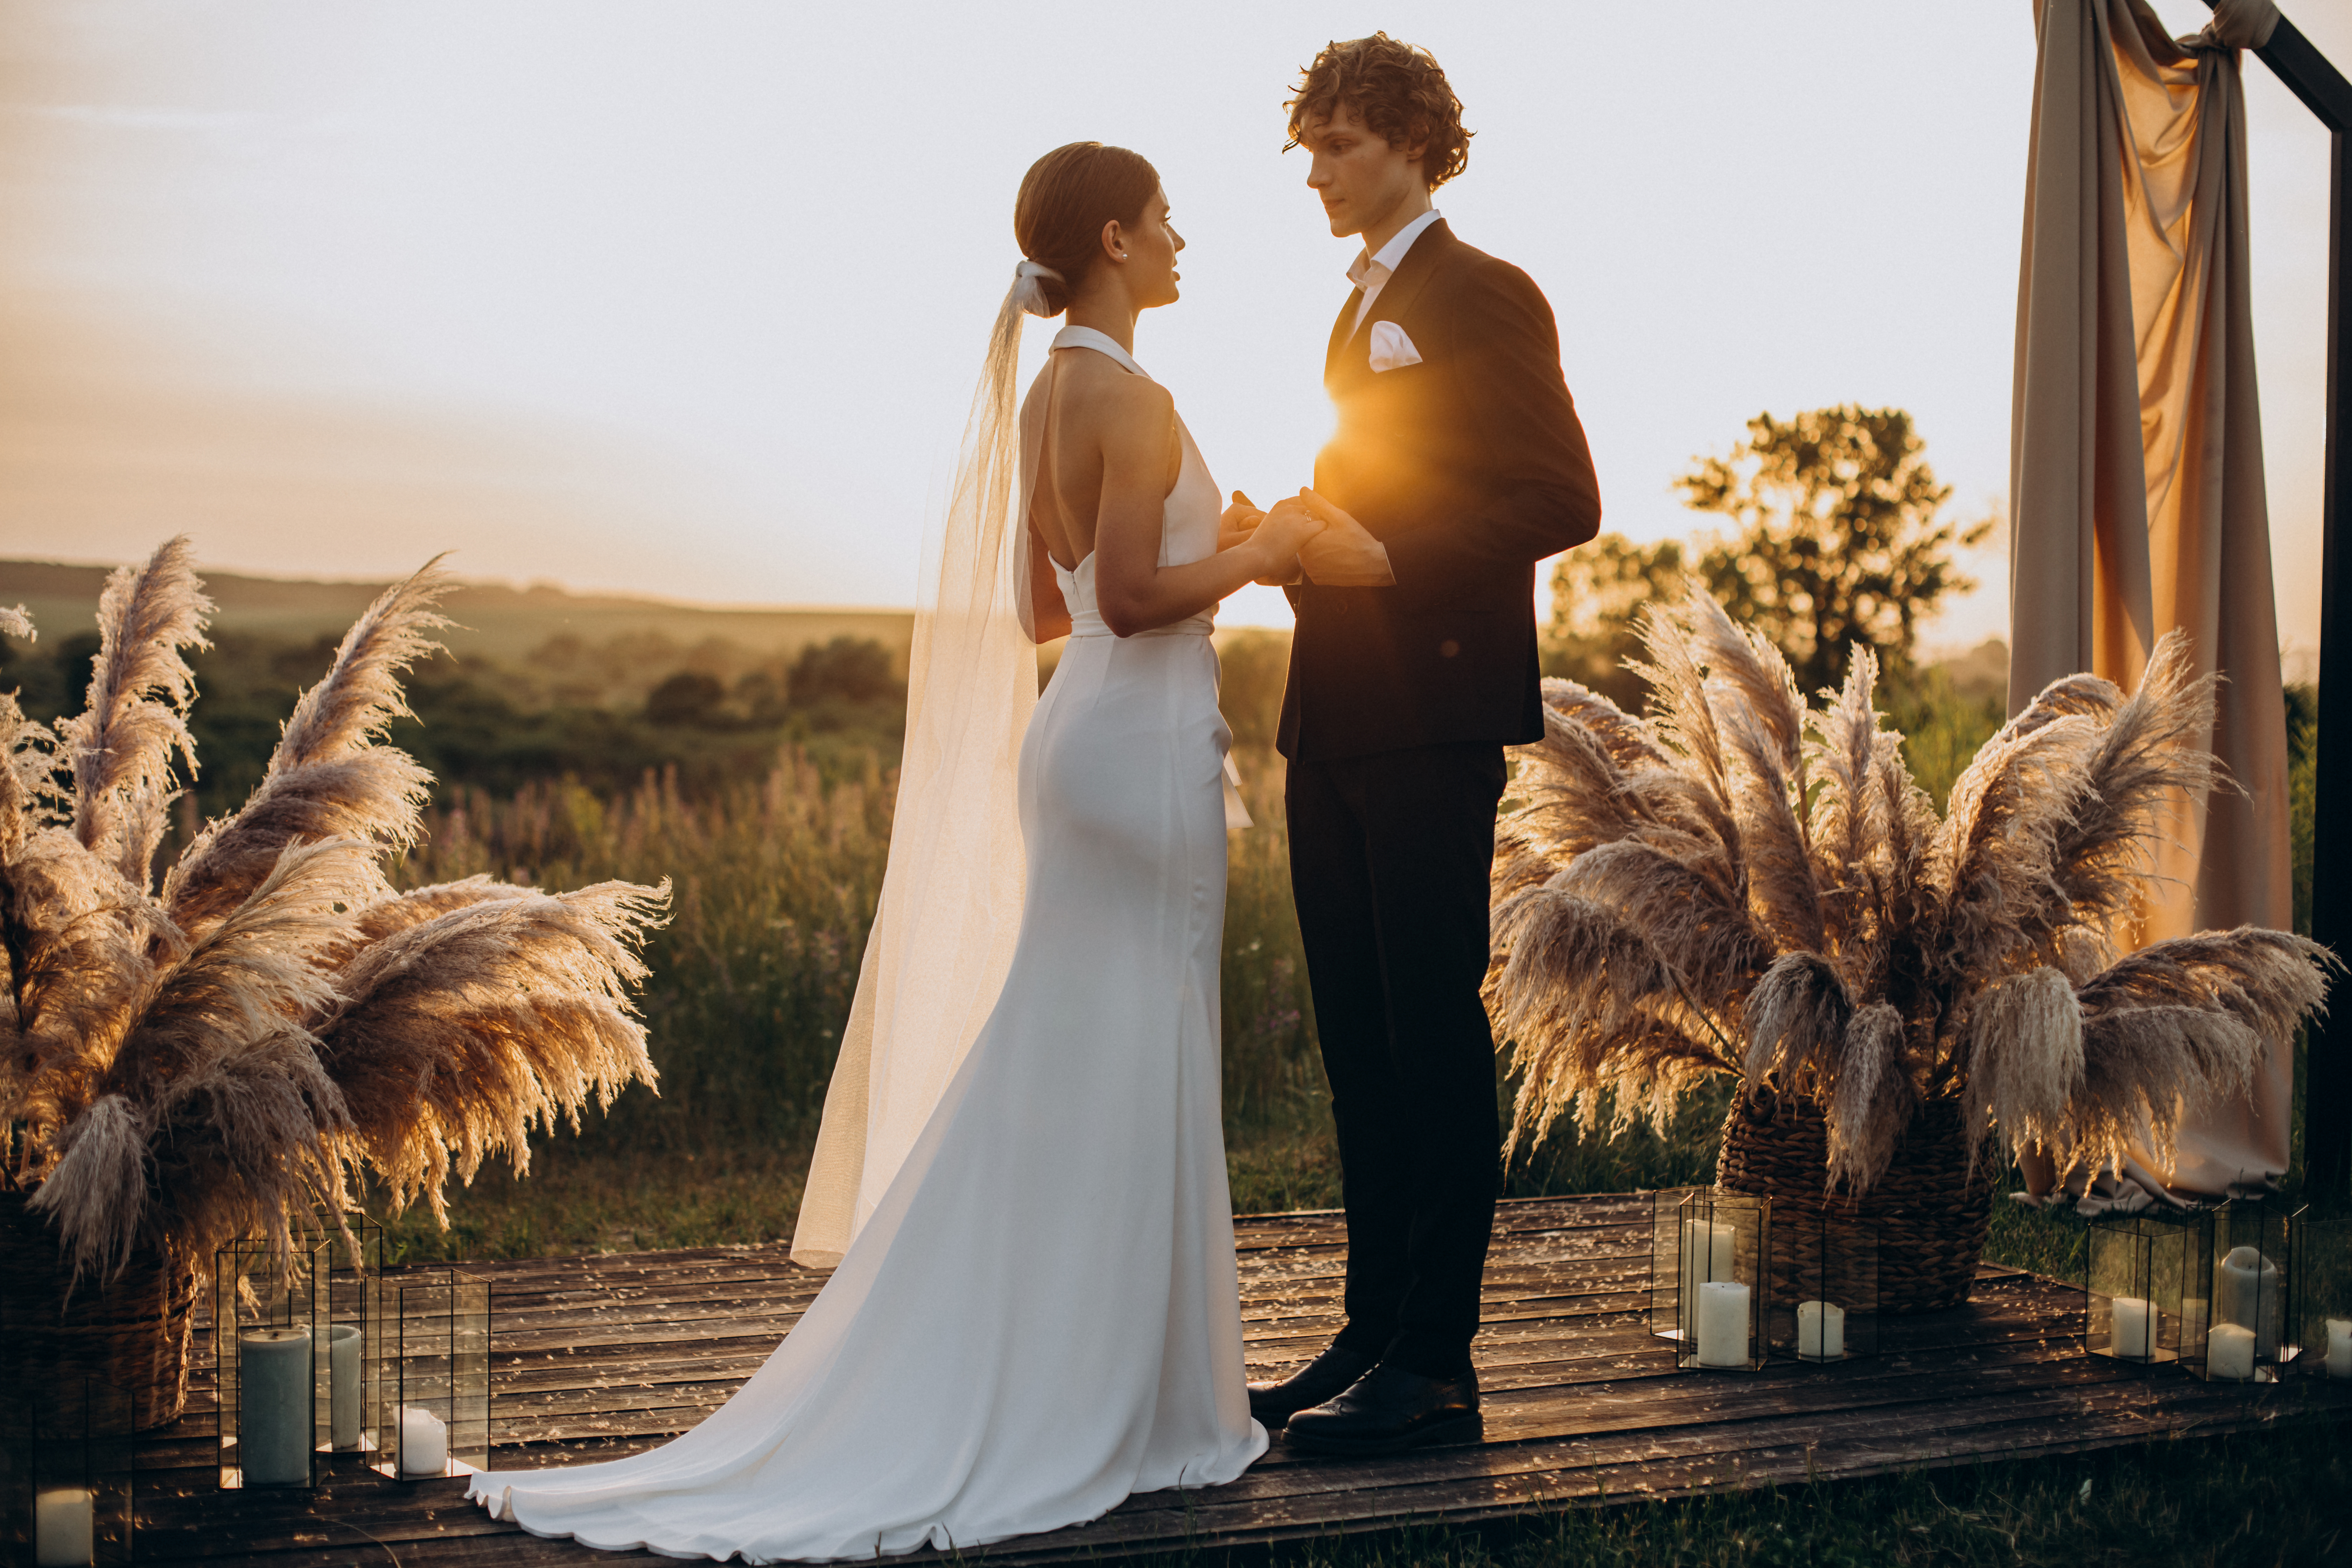 Ein Paar, das heiratet | Quelle: Shutterstock